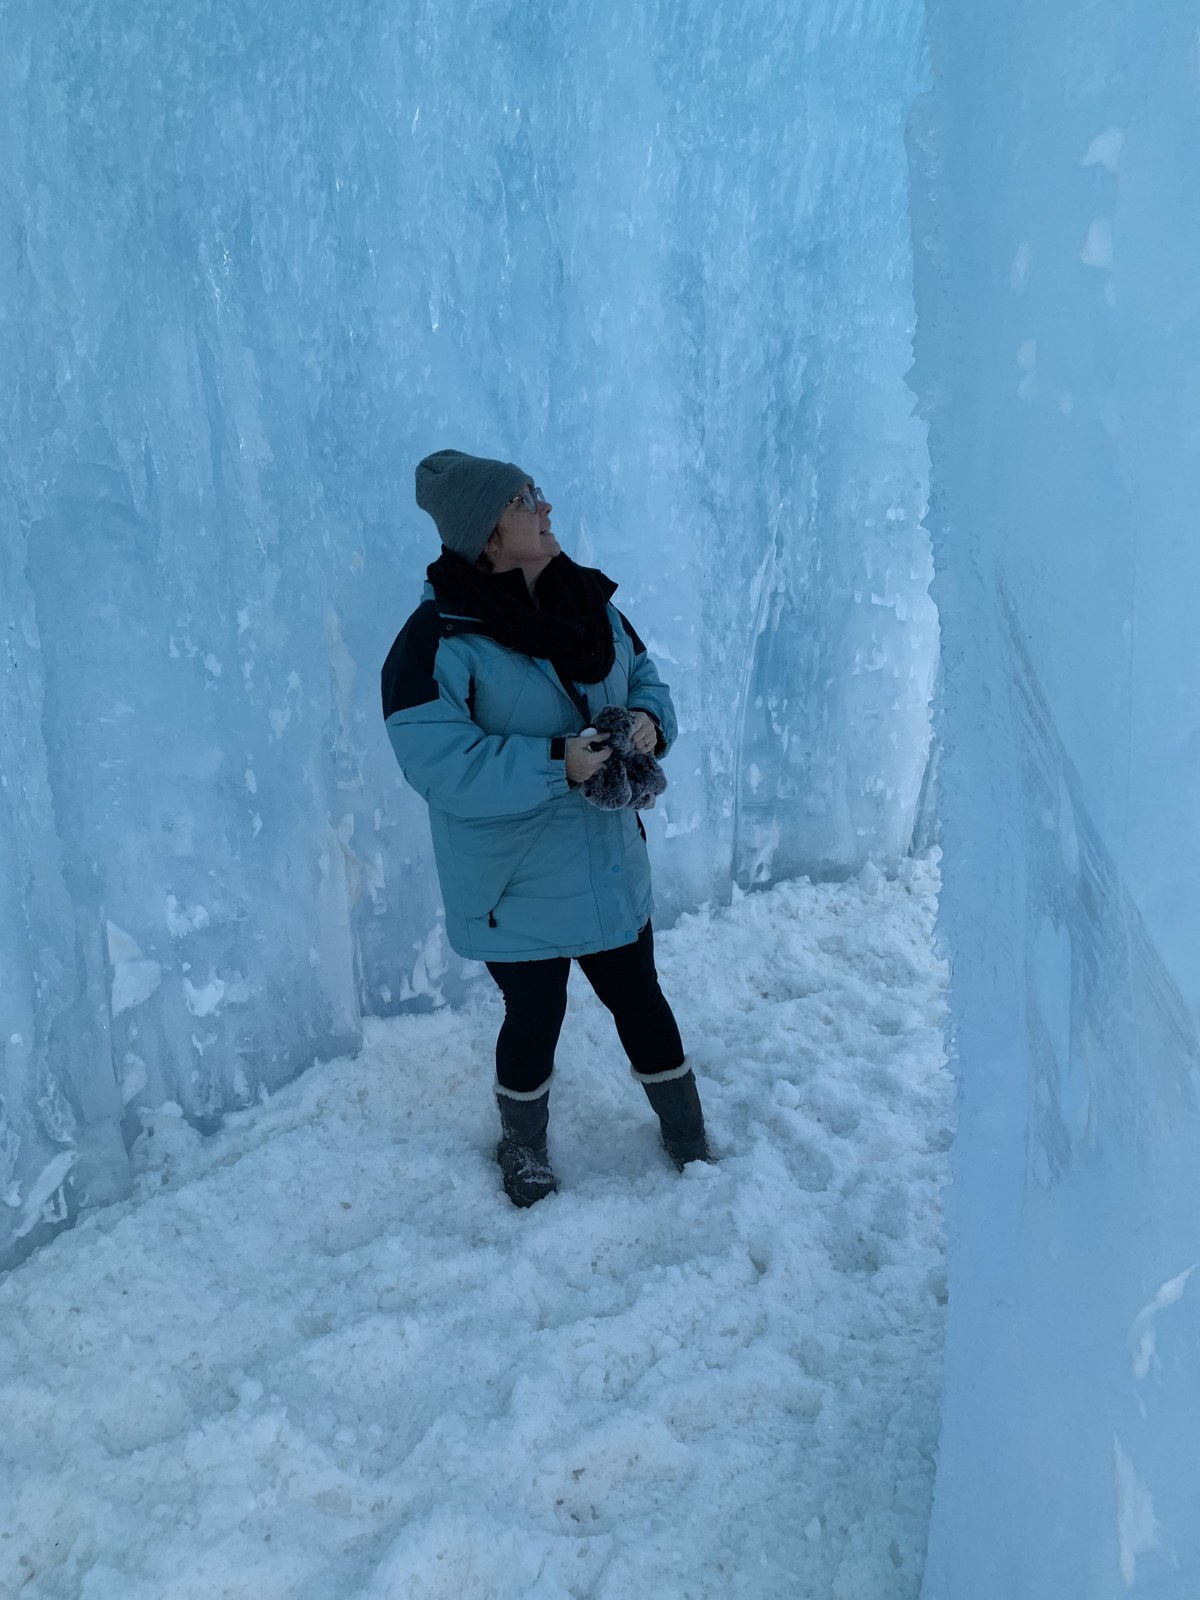 Castillos de hielo NH: 11 consejos para visitar - 71